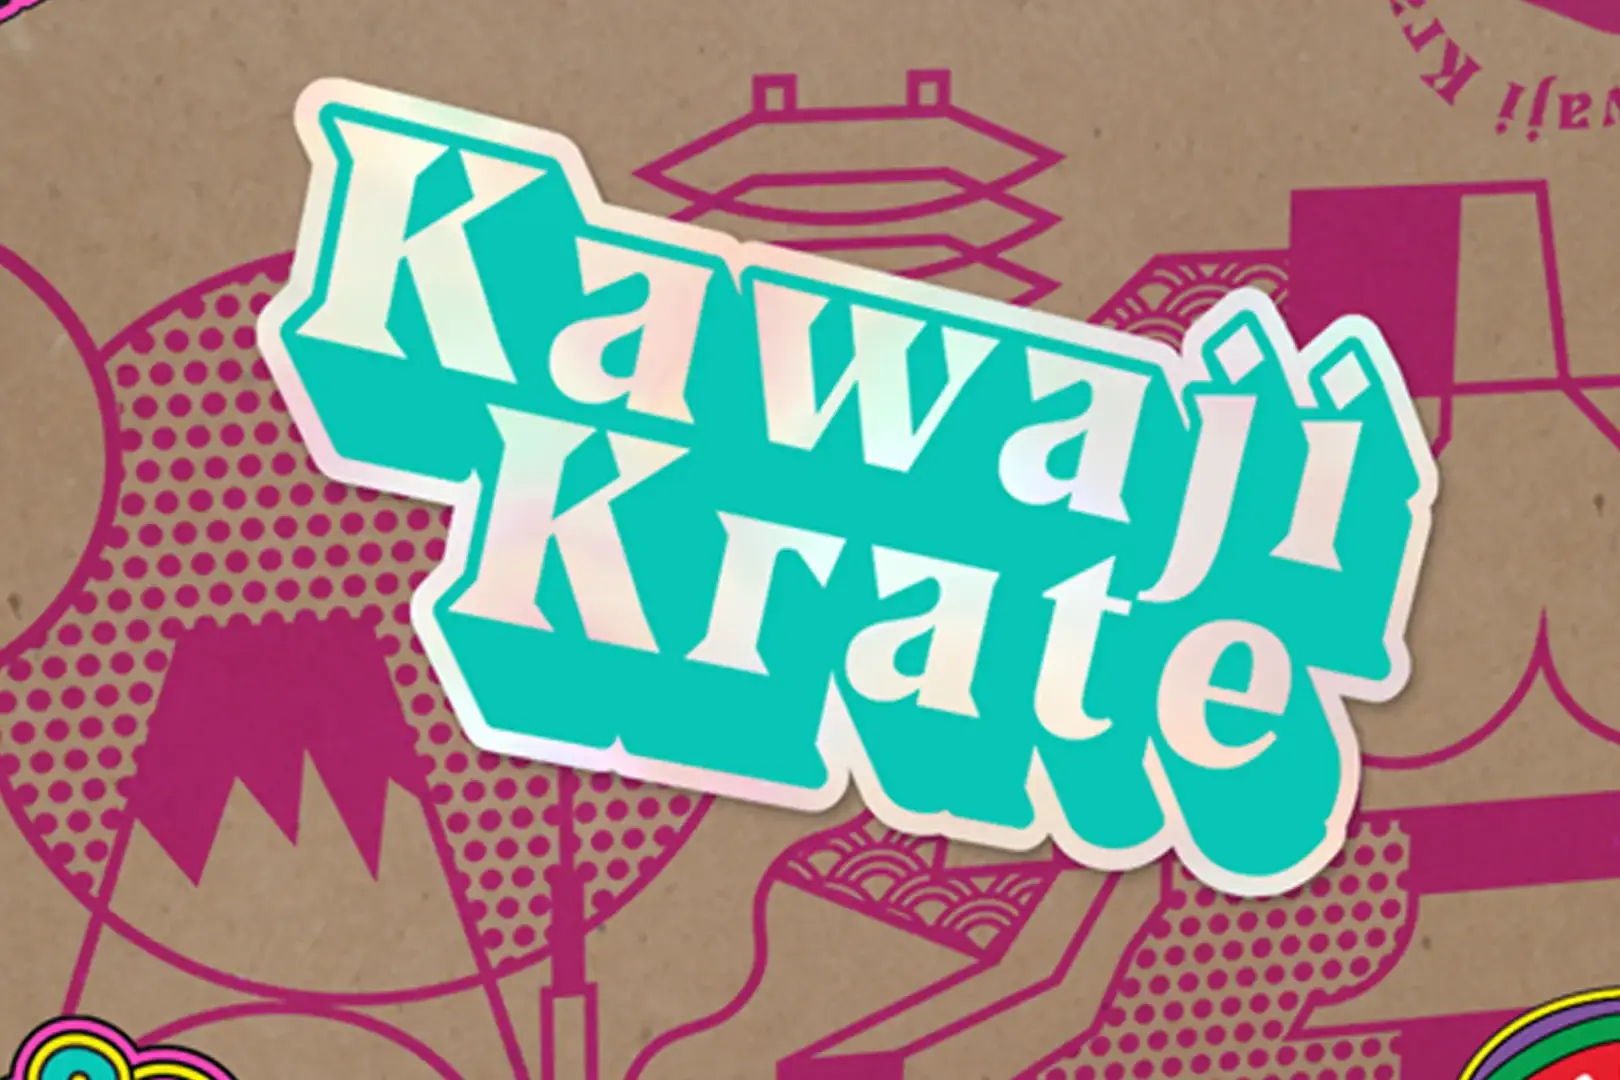 Kawaji Krate